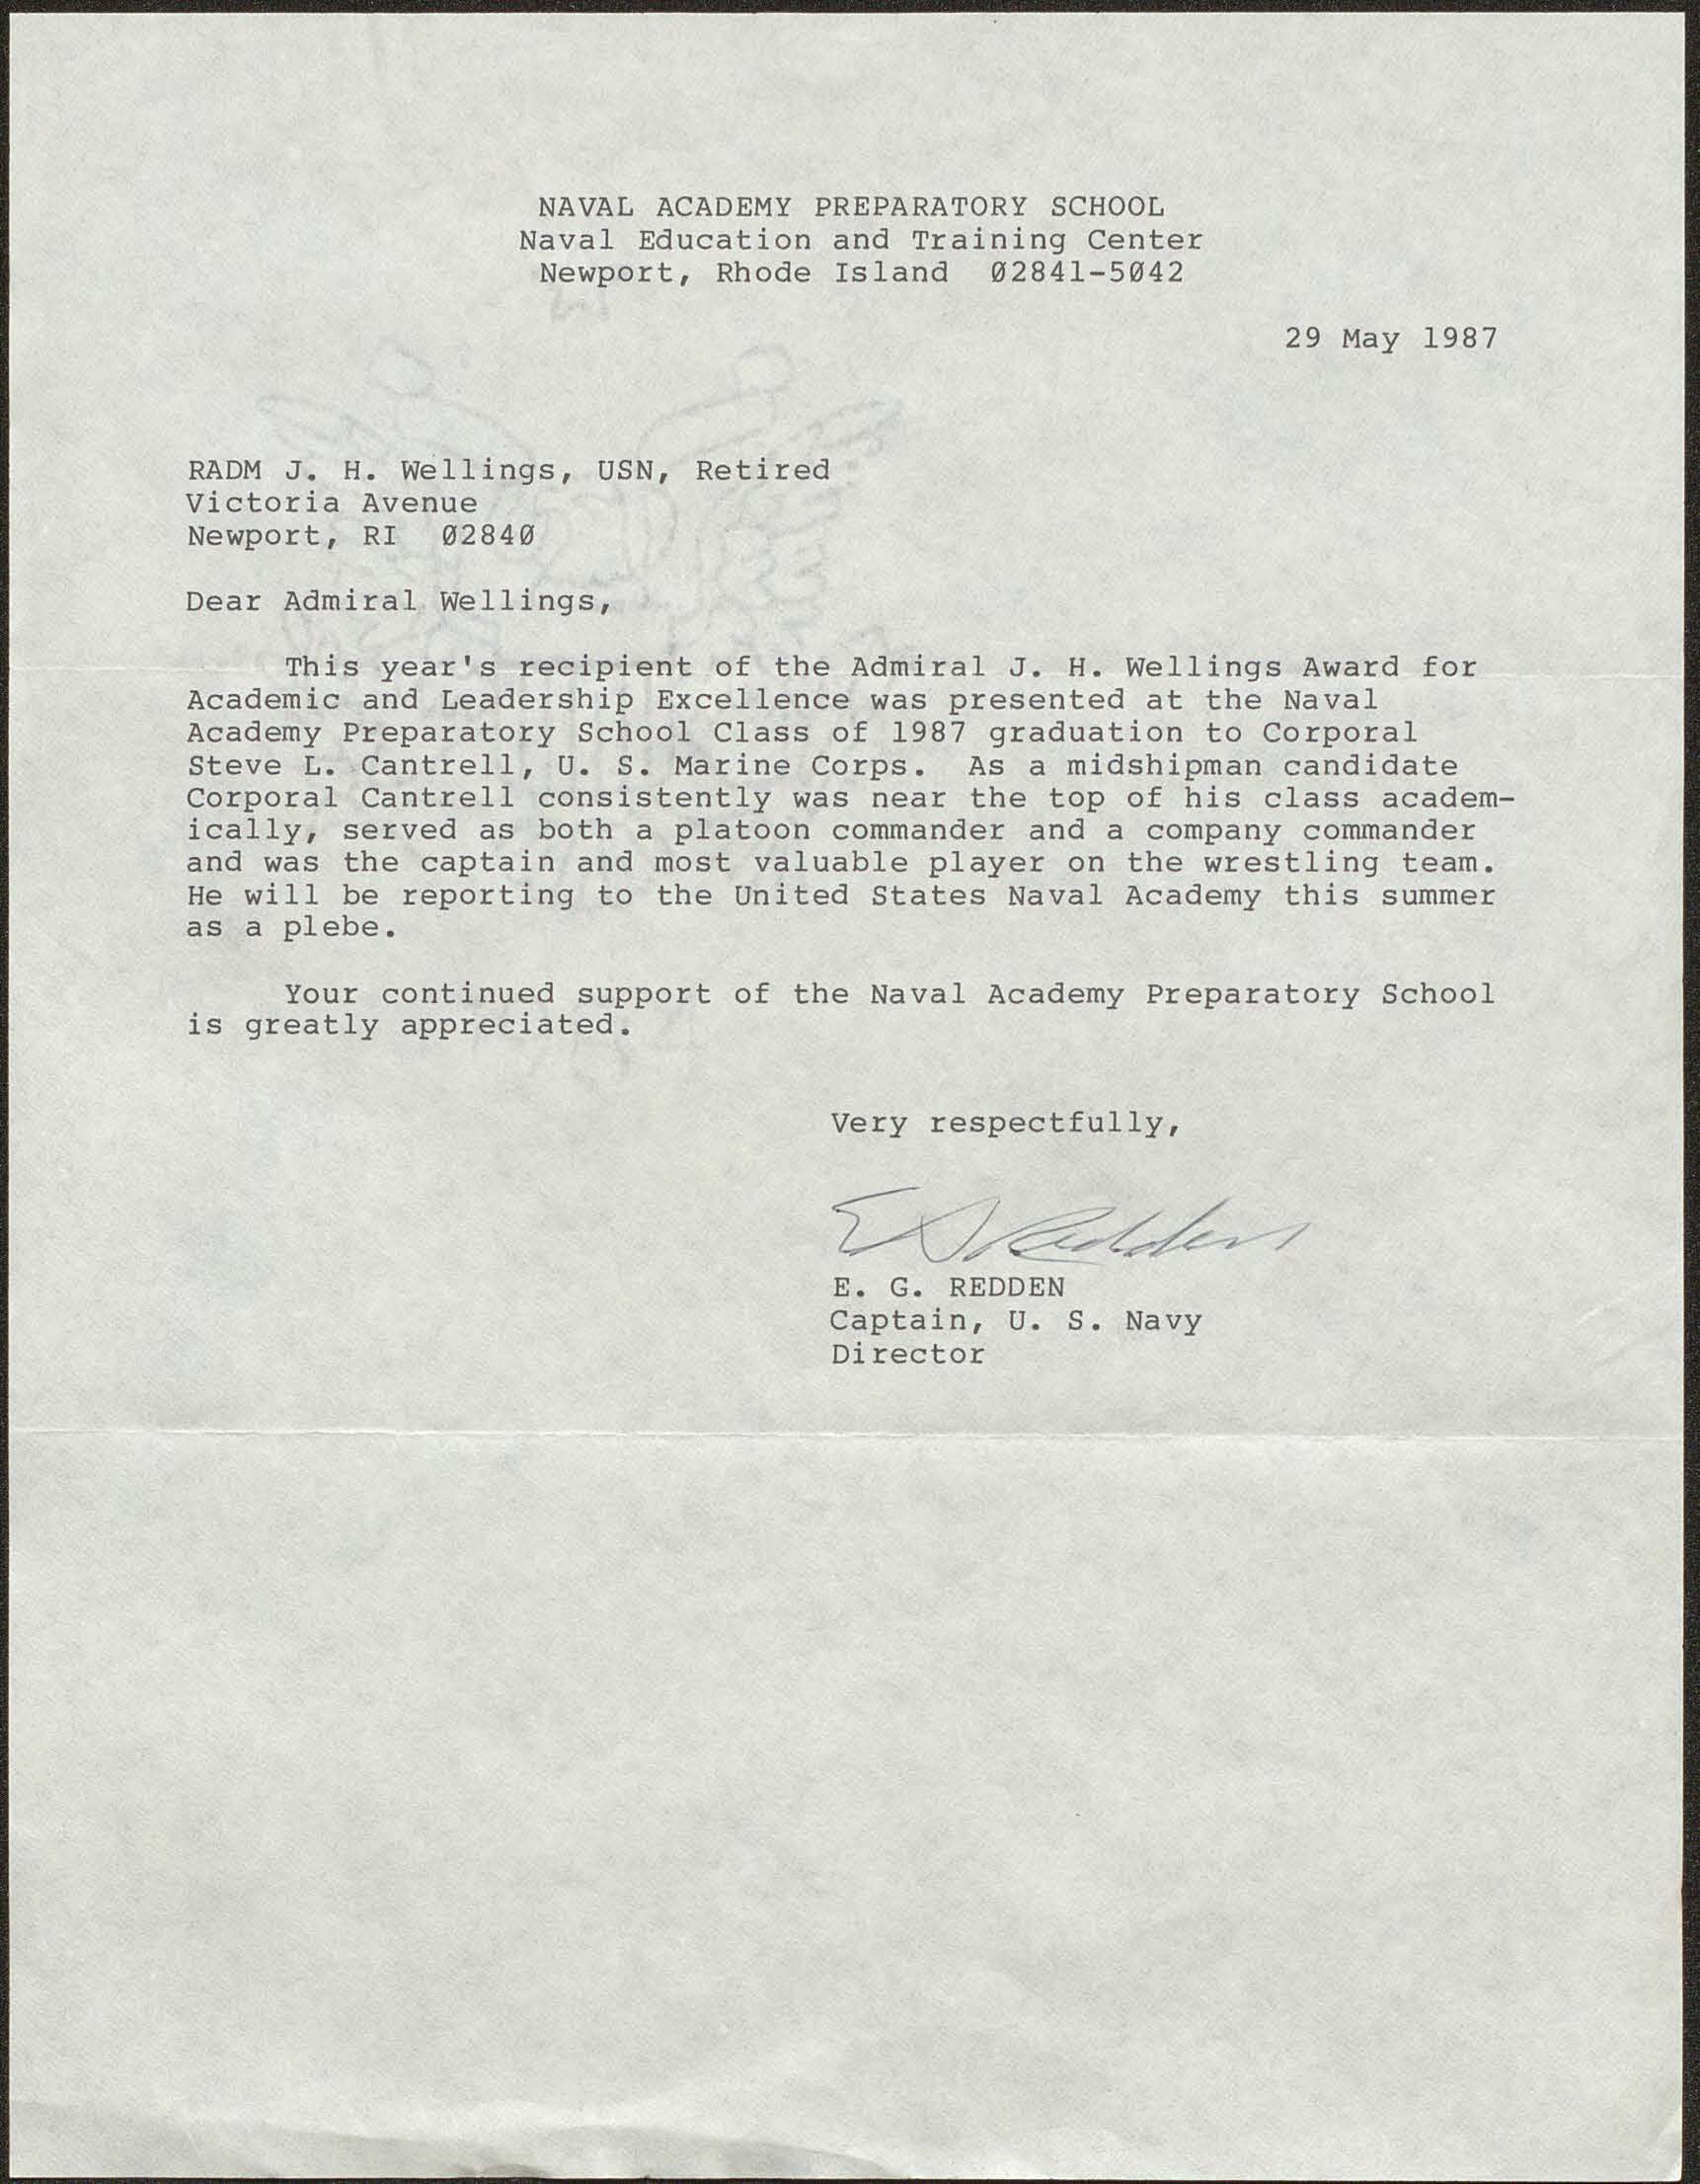 Letter from Captain E. G. Redden to RADM Joseph H. Wellings